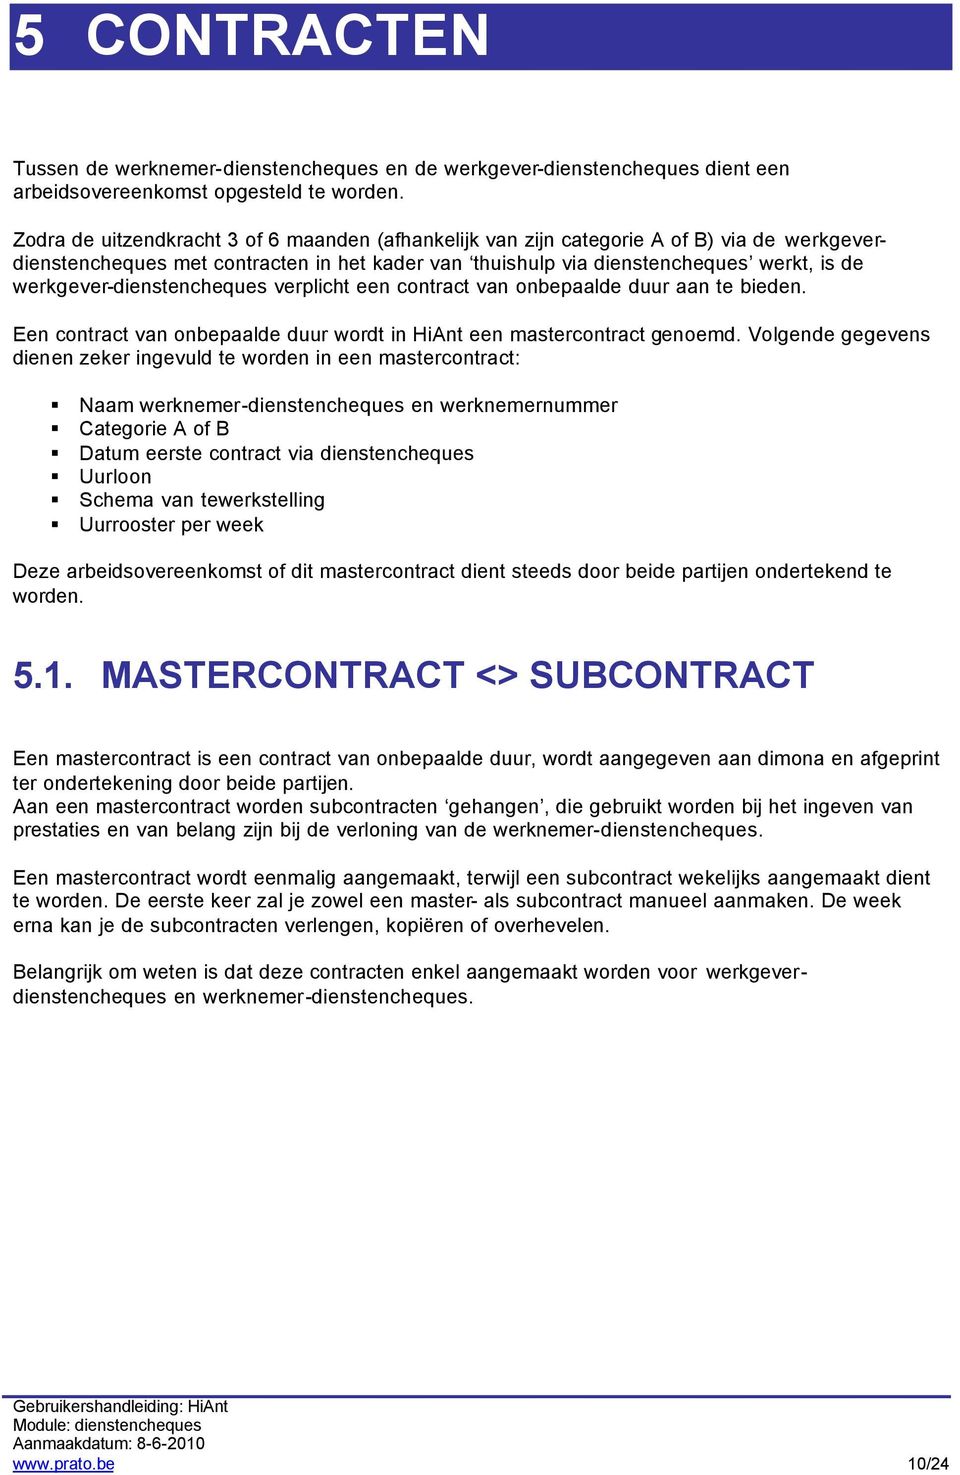 werkgever-dienstencheques verplicht een contract van onbepaalde duur aan te bieden. Een contract van onbepaalde duur wordt in HiAnt een mastercontract genoemd.